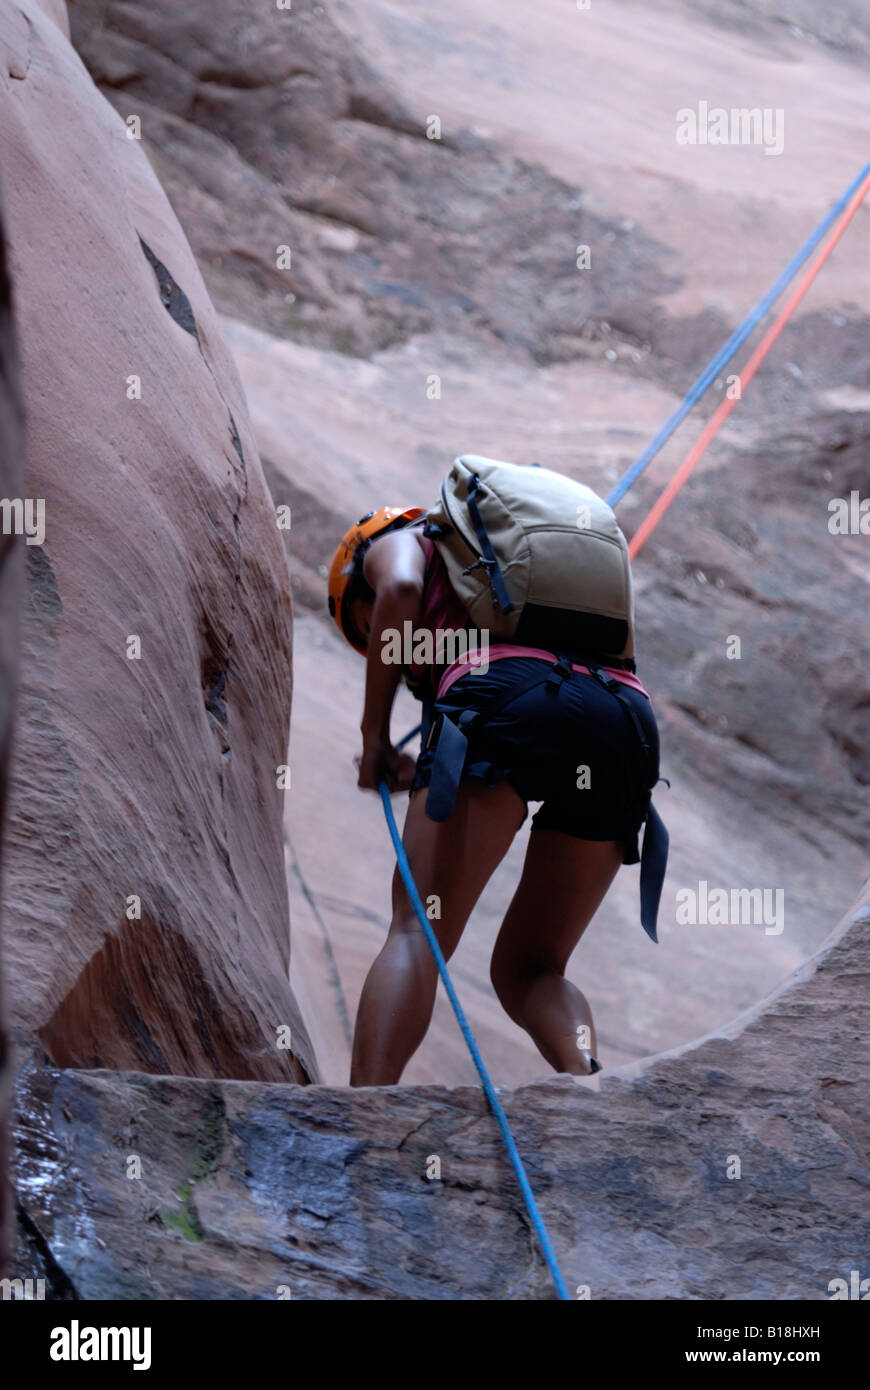 Touristischen hängen an einem Seil beim Canyoning im Bereich der slick Rock Trail in der Nähe von Bögen Bögen Nationalpark Moab Utah USA Herr Stockfoto